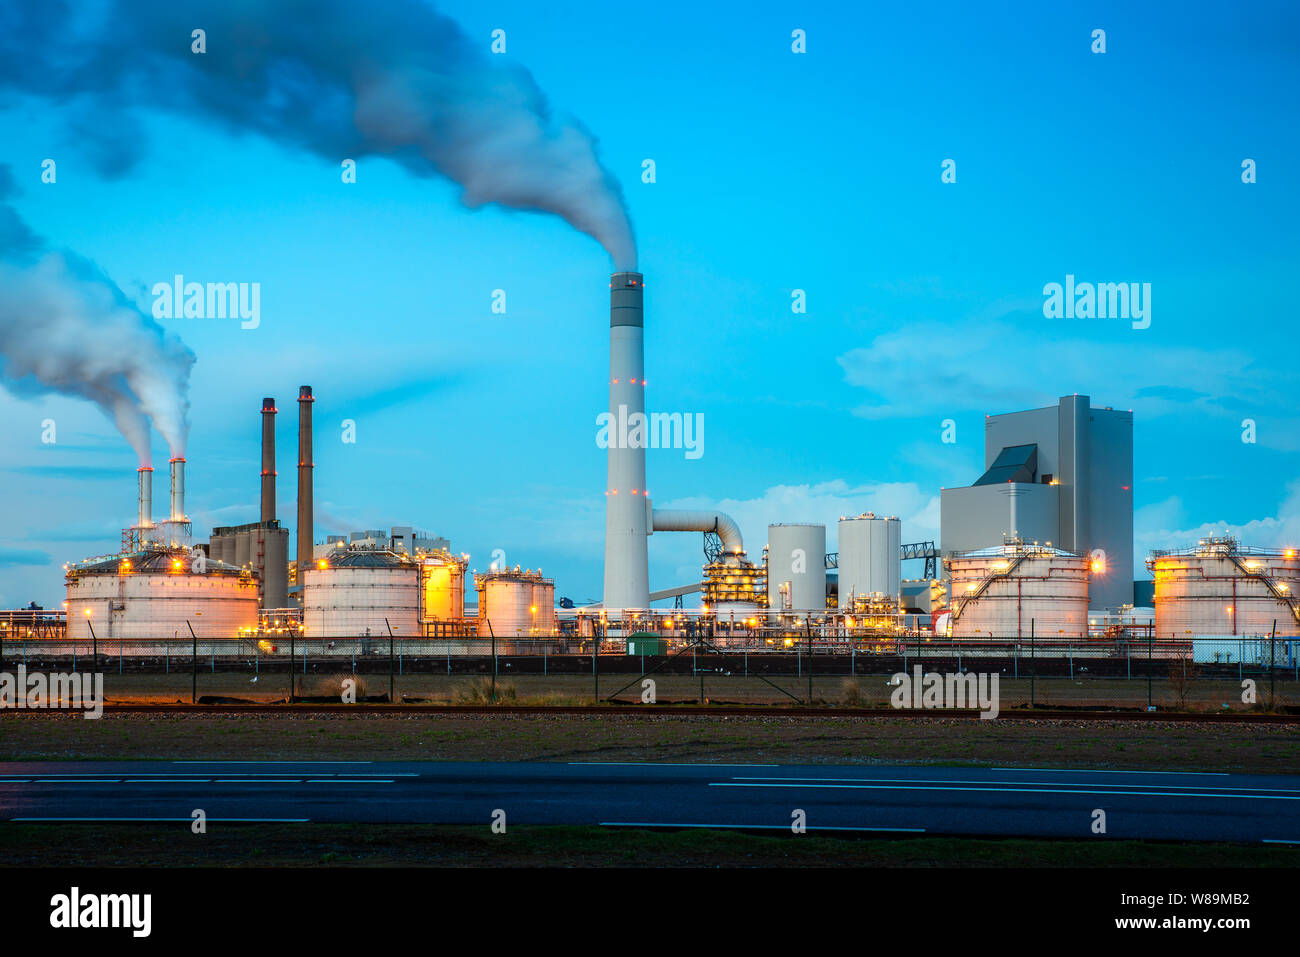 Ölraffinerie Industrie in der Nacht in Rotterdam, Niederlande. Die Verschmutzung von Rauch aus Ölraffinerie Industrie Nutzen für Umwelt Industrie Konzept. Stockfoto